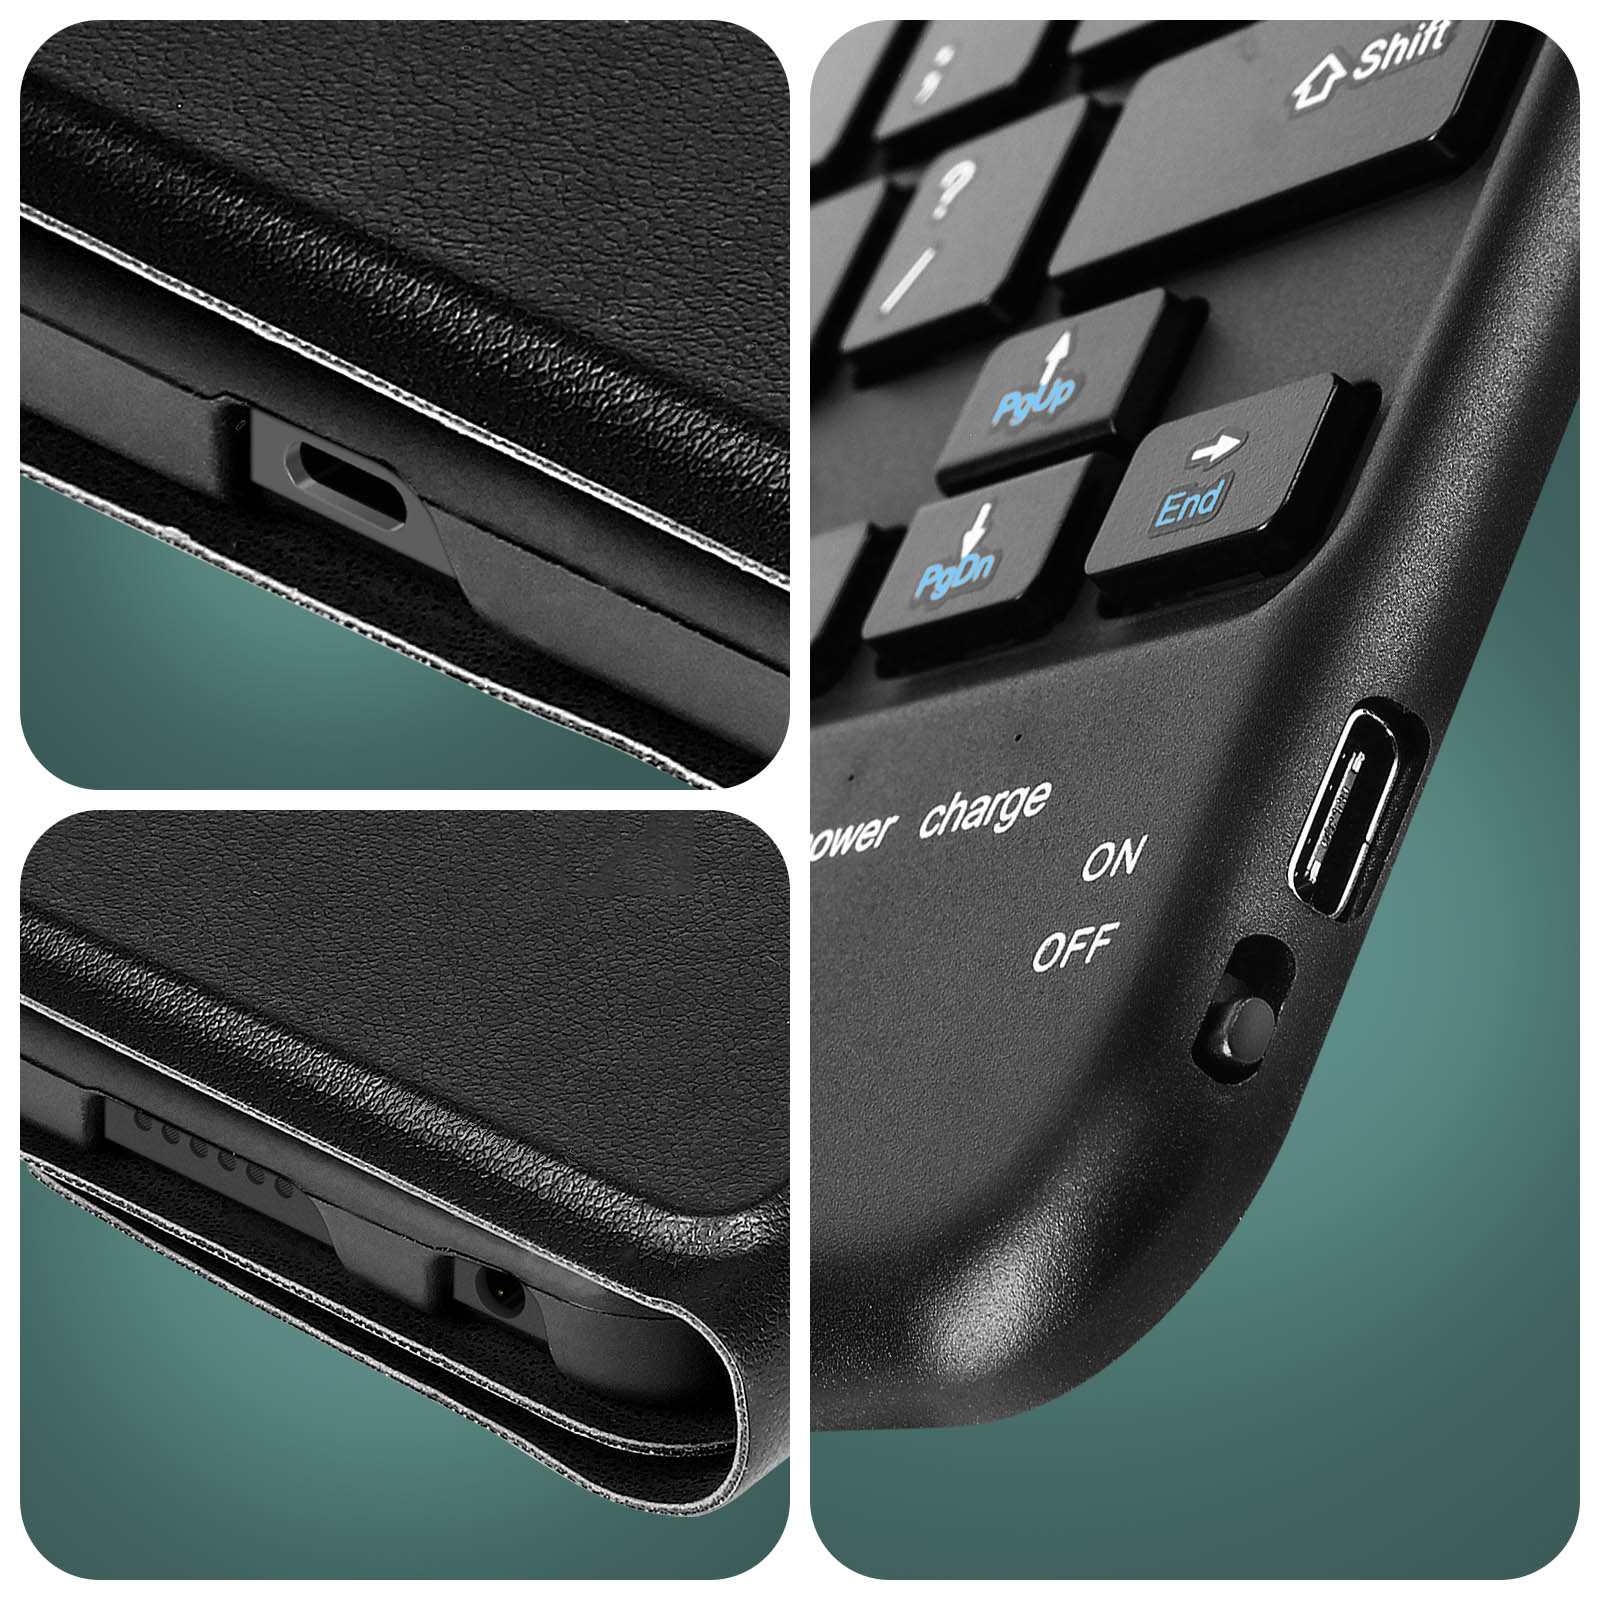 Custodia con tastiera QWERTY integrata, ultra-compatta per Lenovo Tab M10  Plus Gen 3 - Italiano